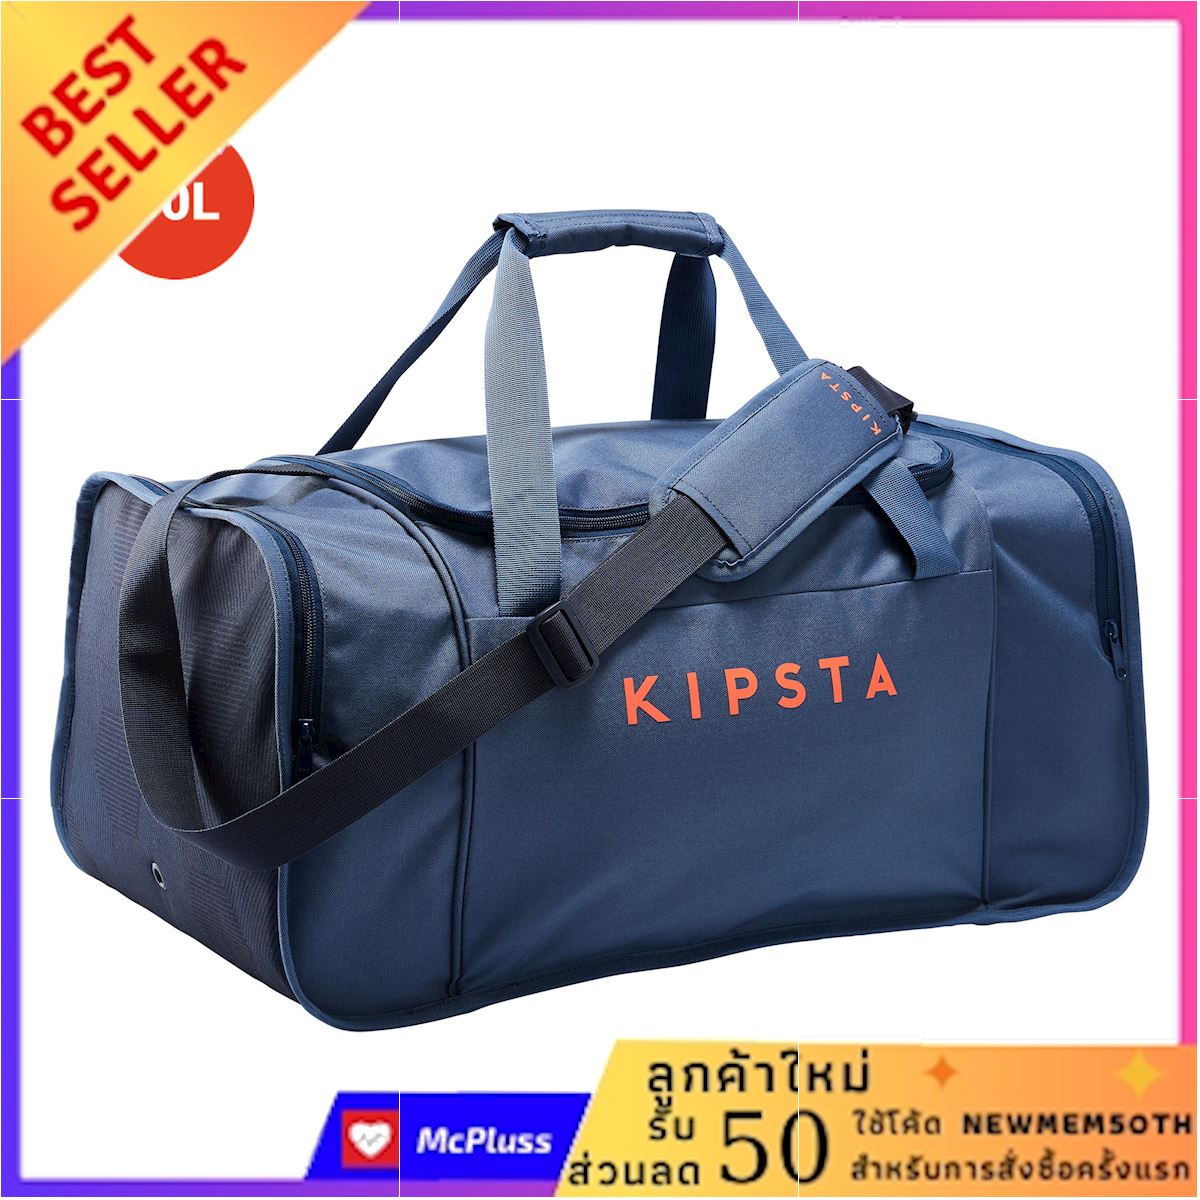 กระเป๋ากีฬารุ่น KIPOCKET ขนาด 60 ลิตร (สีน้ำเงิน/ส้ม) บริการเก็บเงินปลายทาง